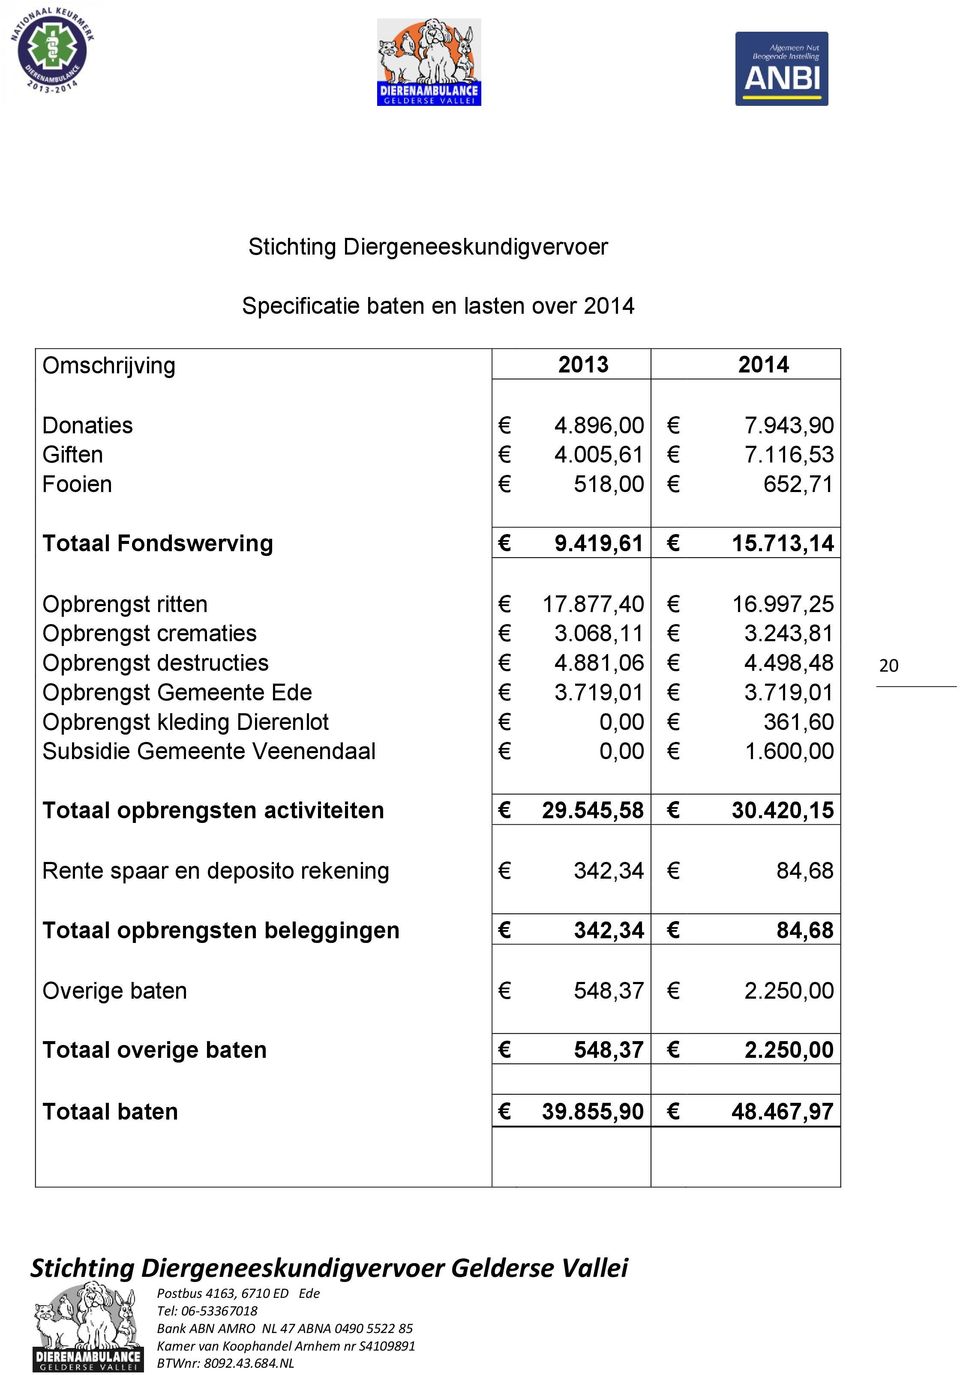 881,06 4.498,48 Opbrengst Gemeente Ede 3.719,01 3.719,01 Opbrengst kleding Dierenlot 0,00 361,60 Subsidie Gemeente Veenendaal 0,00 1.